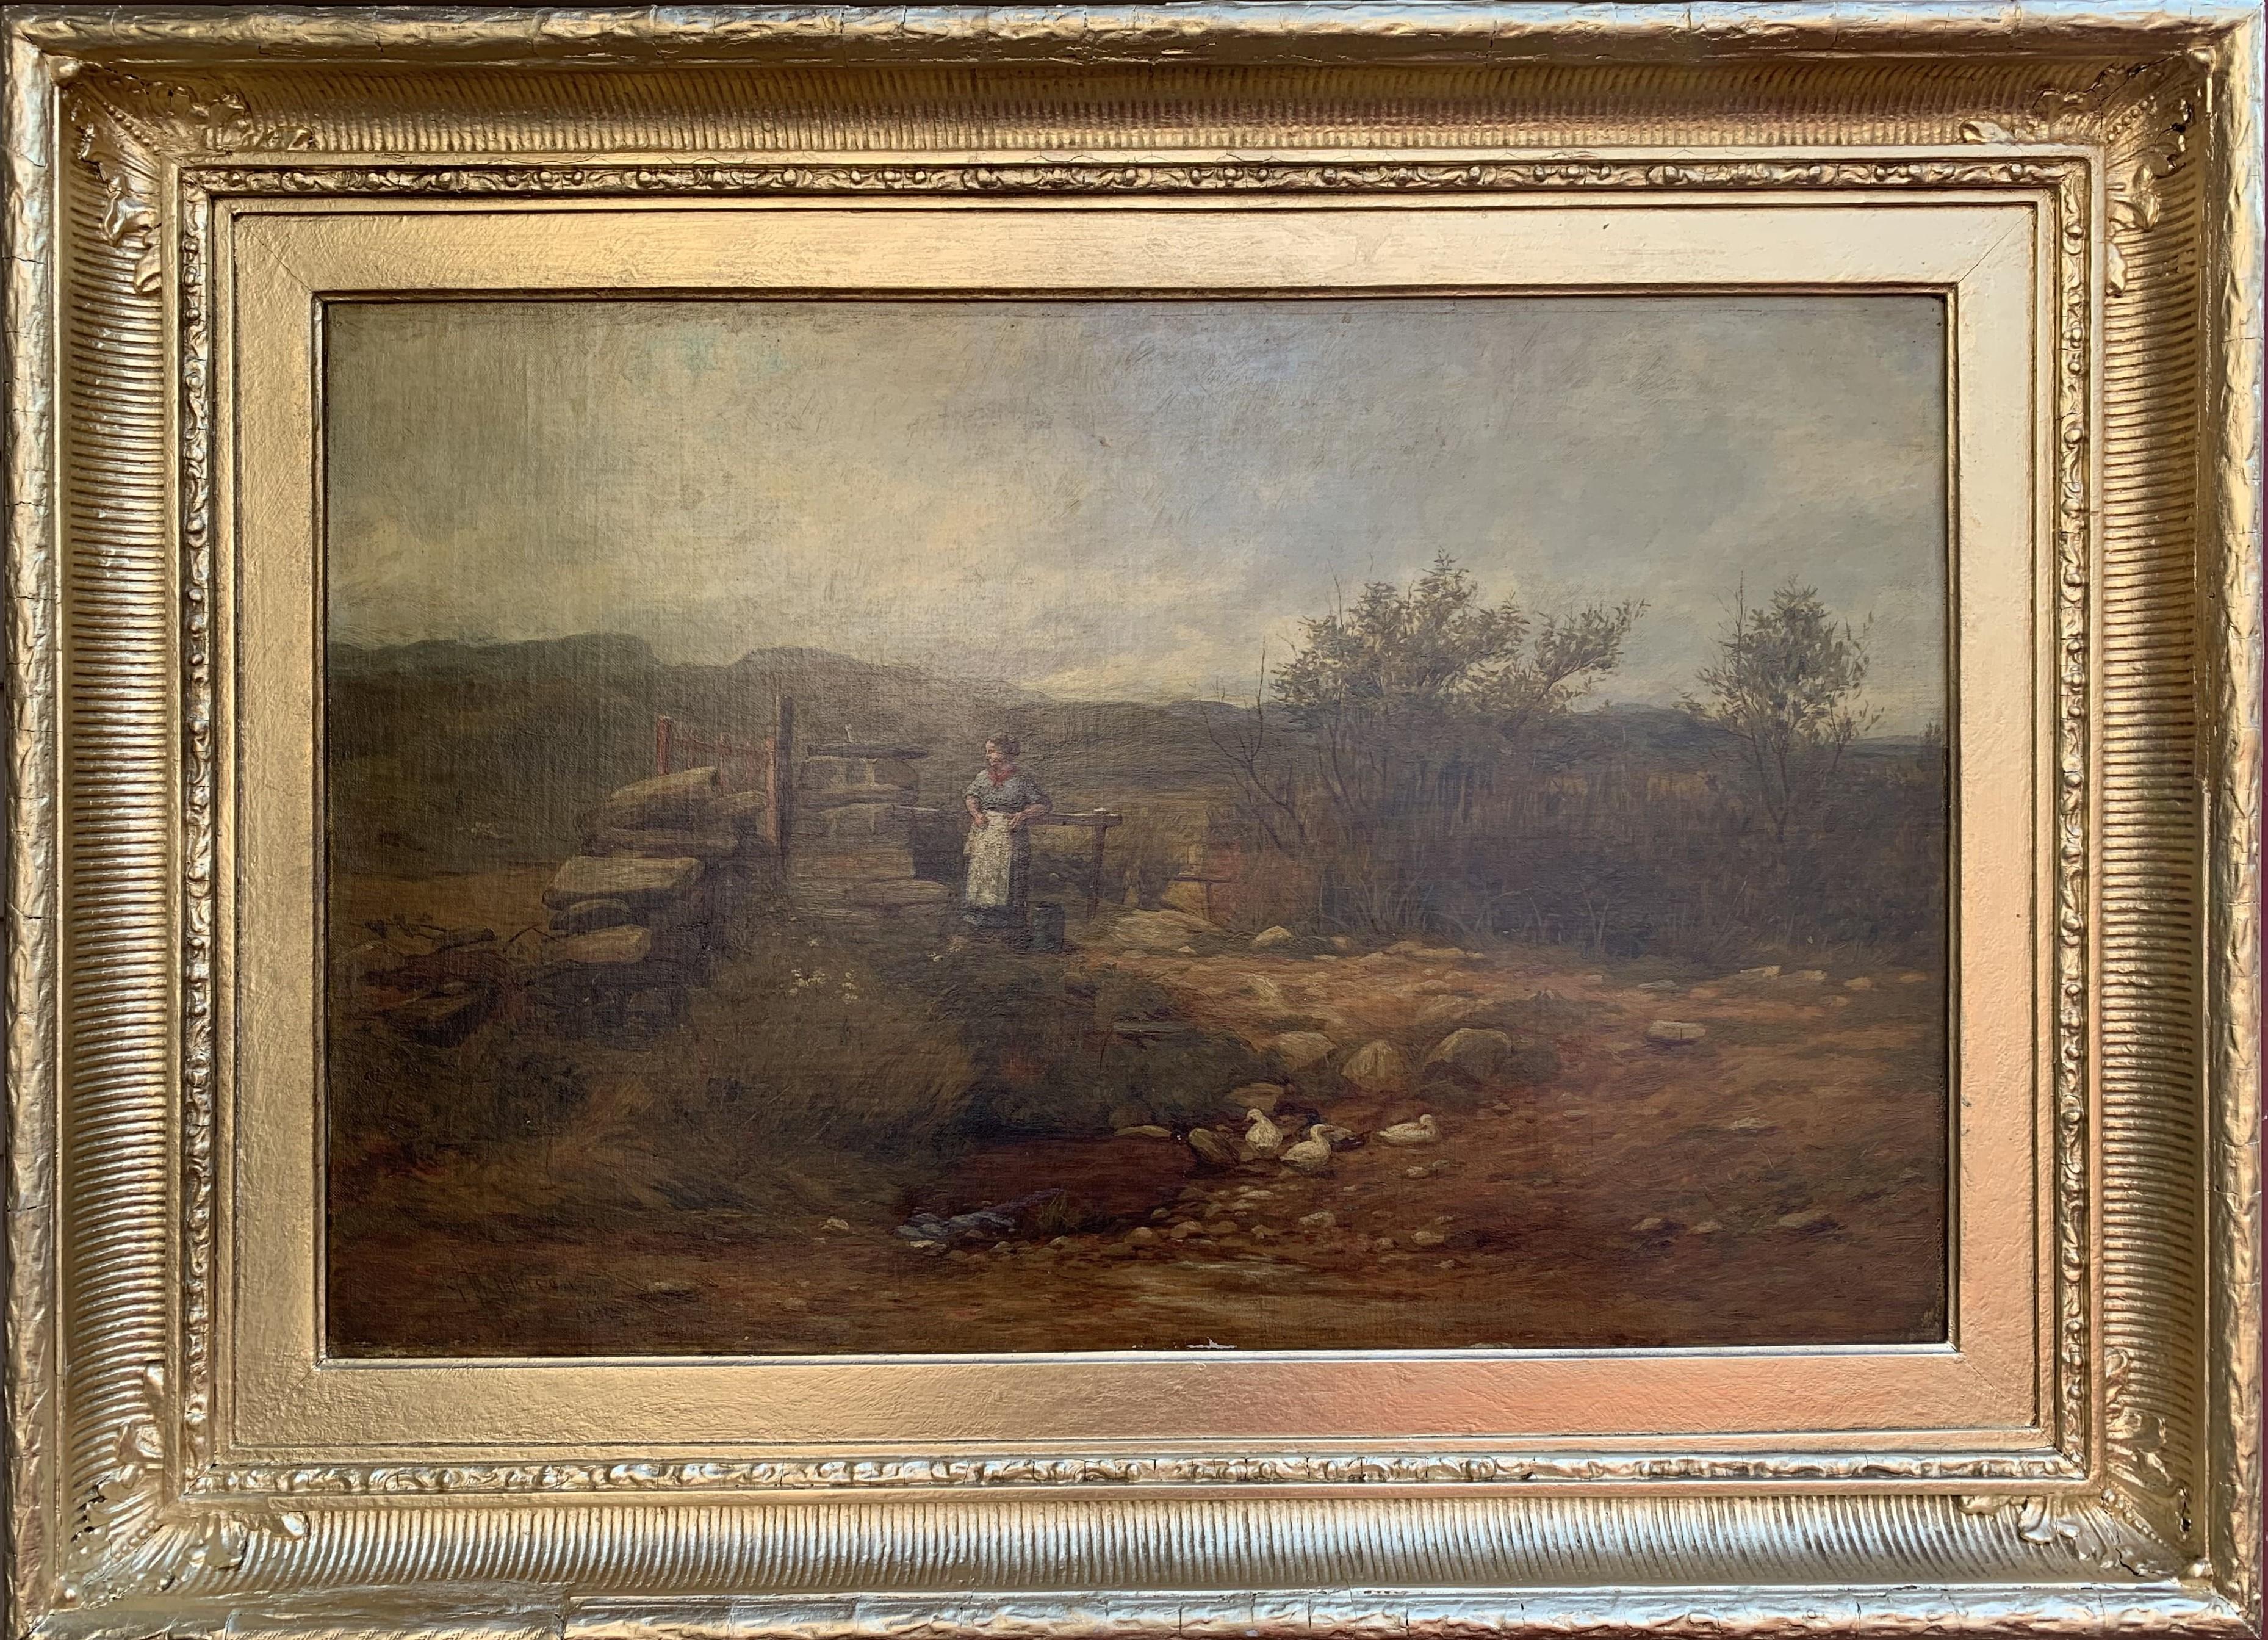 Il s'agit d'une peinture à l'huile ancienne sur toile représentant un paysage de campagne avec une femme et des canards.  

Signé et daté 1876 en bas à gauche par l'Artiste répertorié George Whitton Johnstone (Britannique, 1849-1901)

Présenté dans